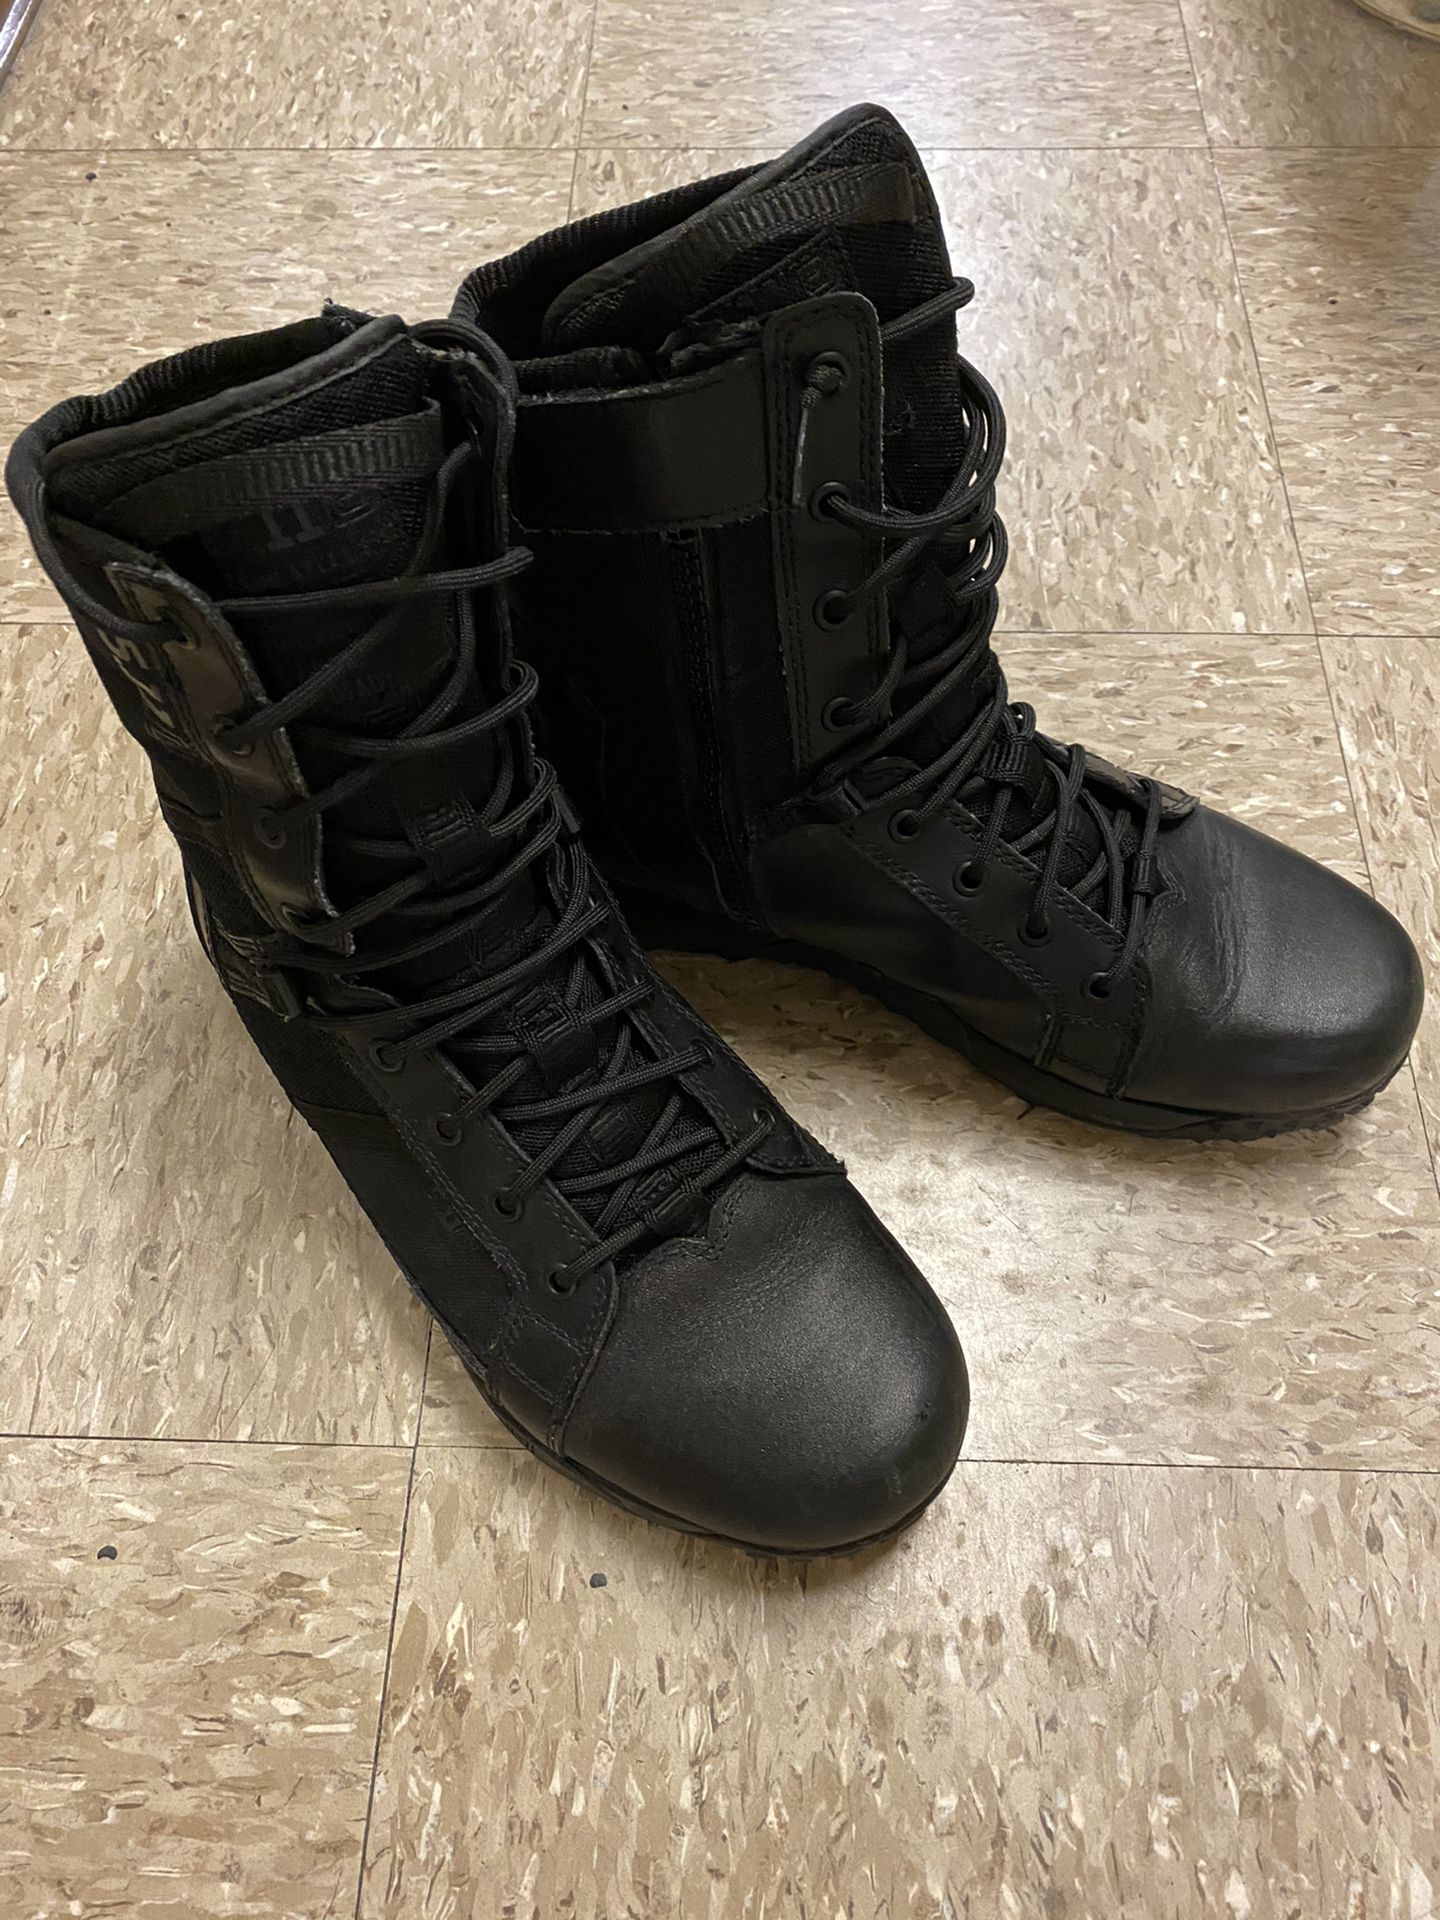 5.11 Tactical Boots